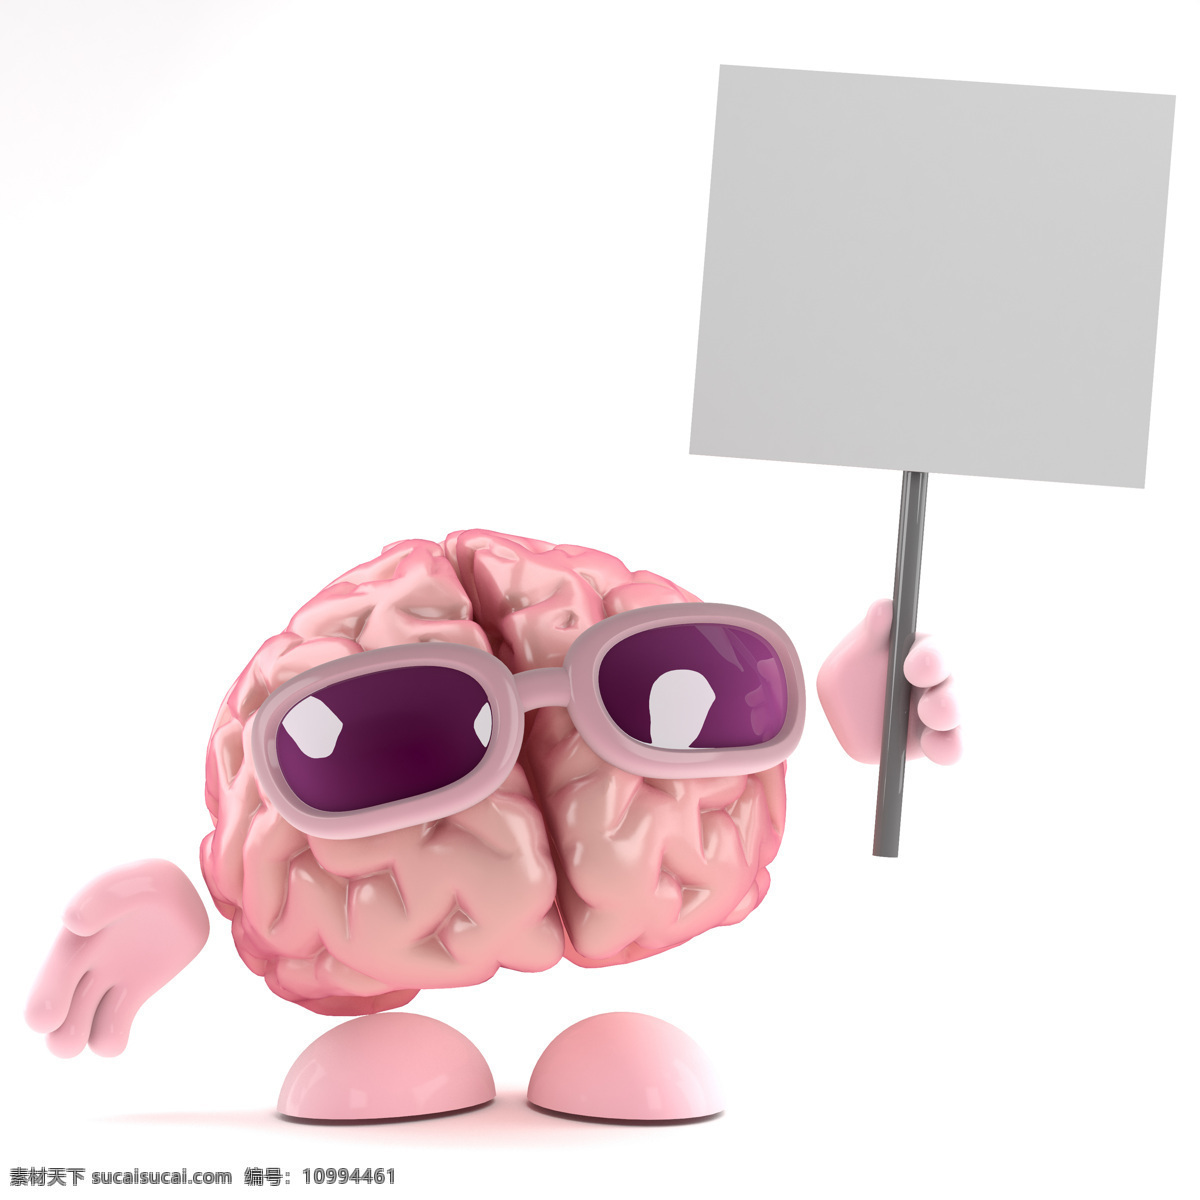 大脑 漫画 人类大脑 大脑漫画 大脑设计 卡通大脑 大脑人物 虚拟人物 儿童卡通 卡通动画 脑细胞 脑容量 太阳镜 广告 动漫动画